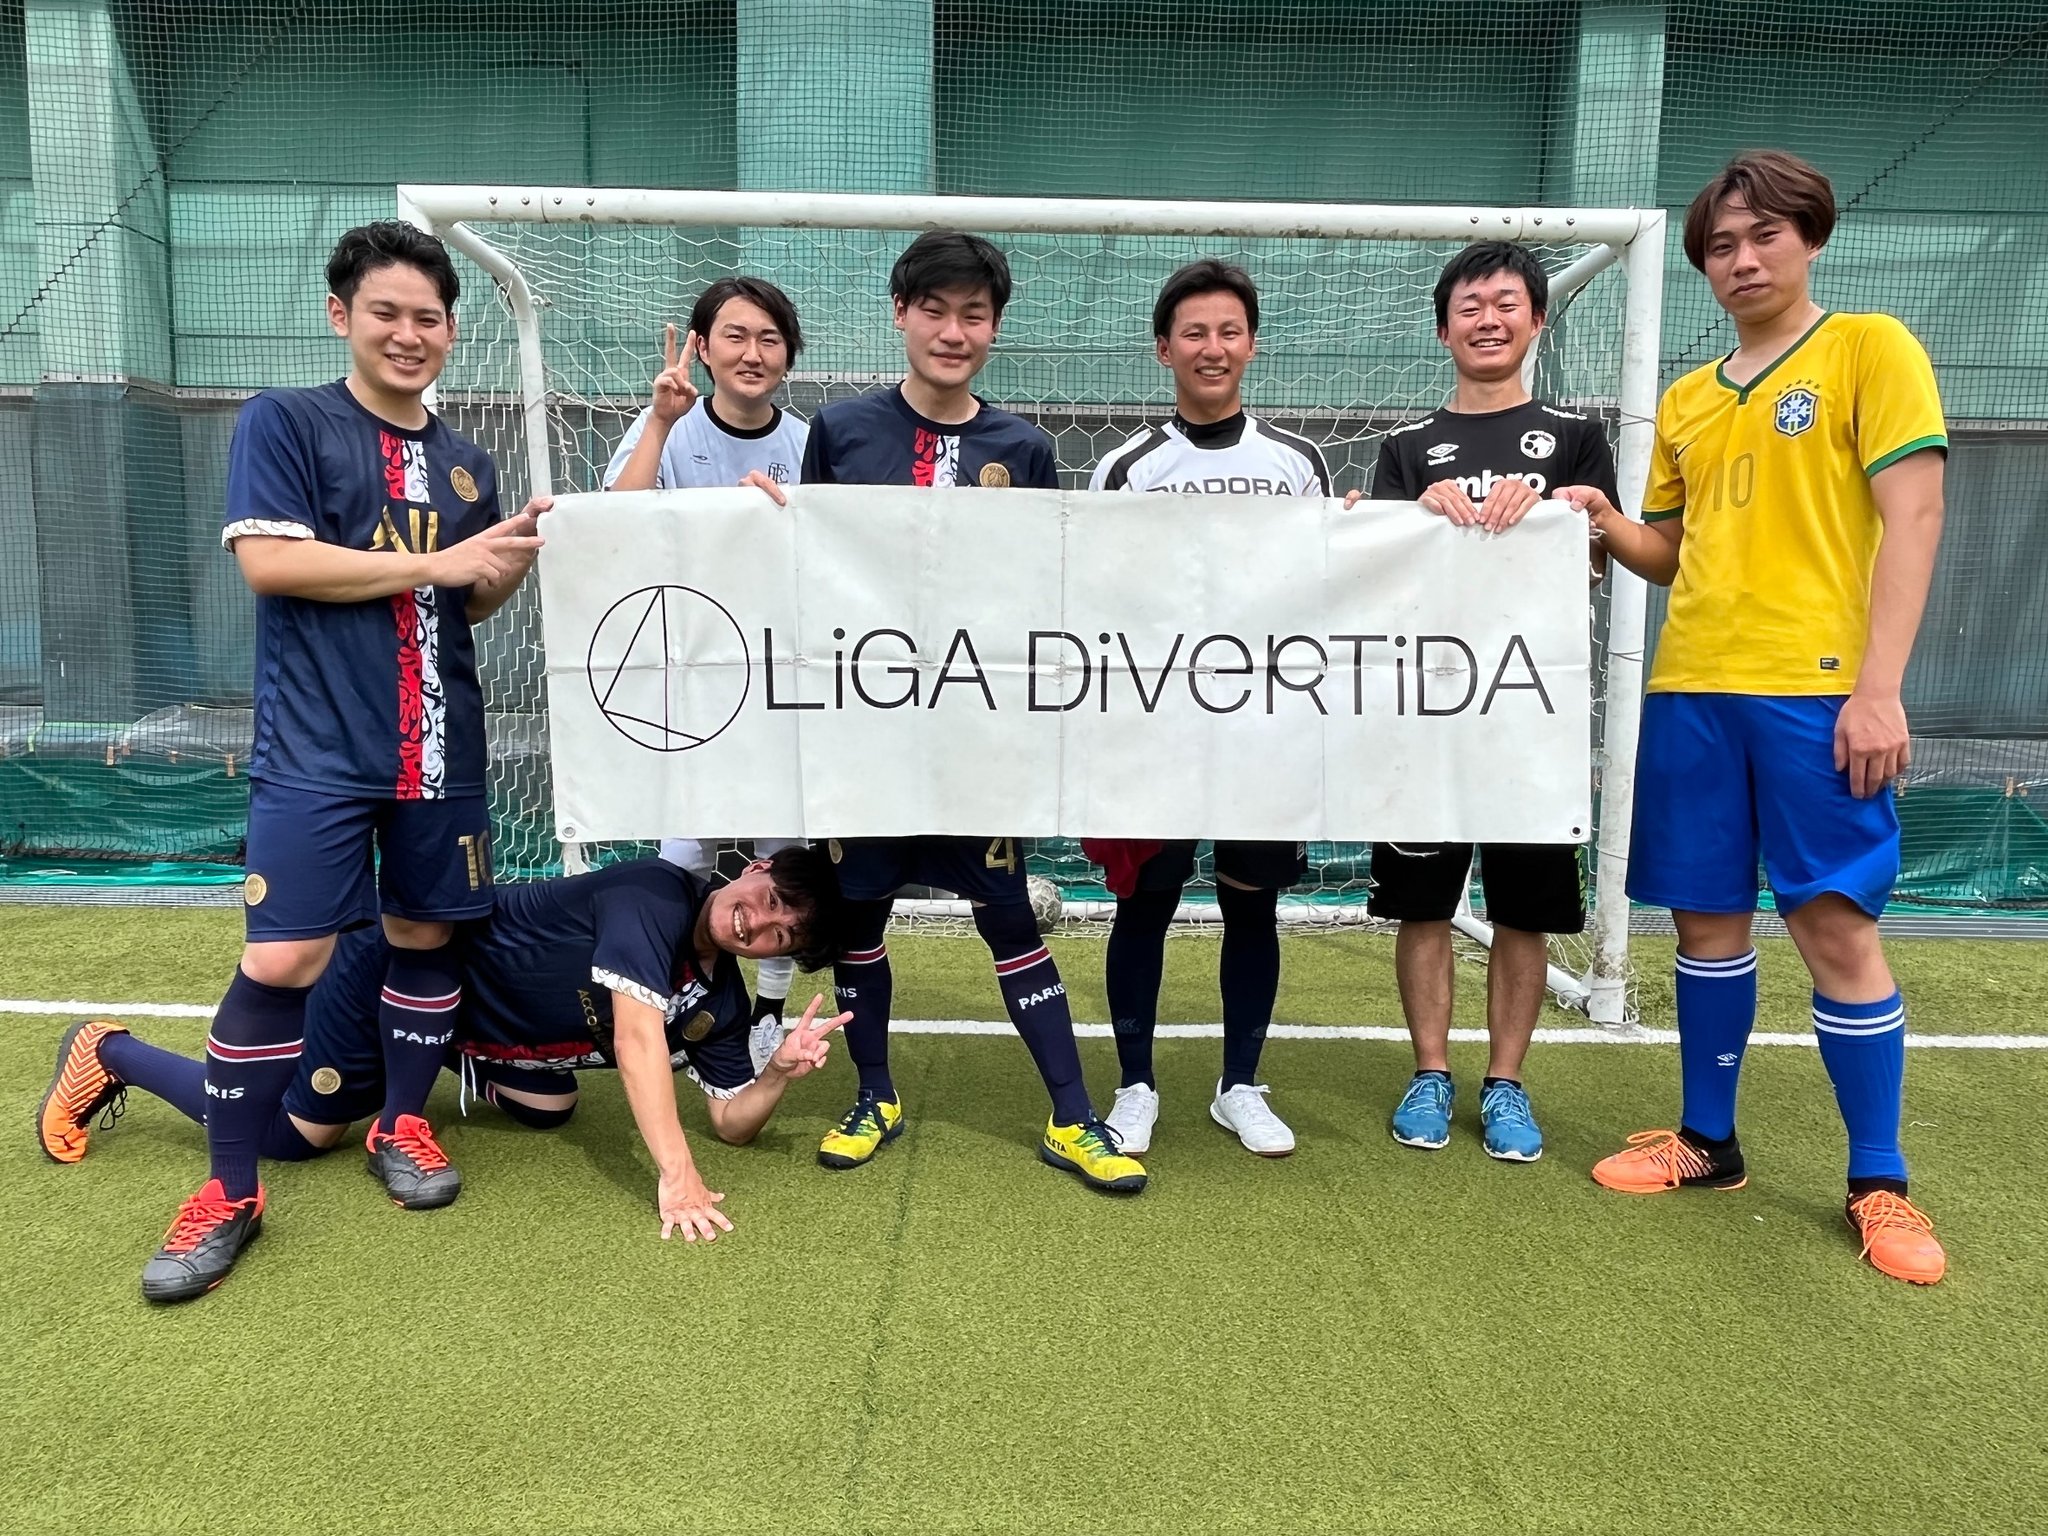 Liga Divertida フットサル ソサイチ大会 Ligadivertida Twitter